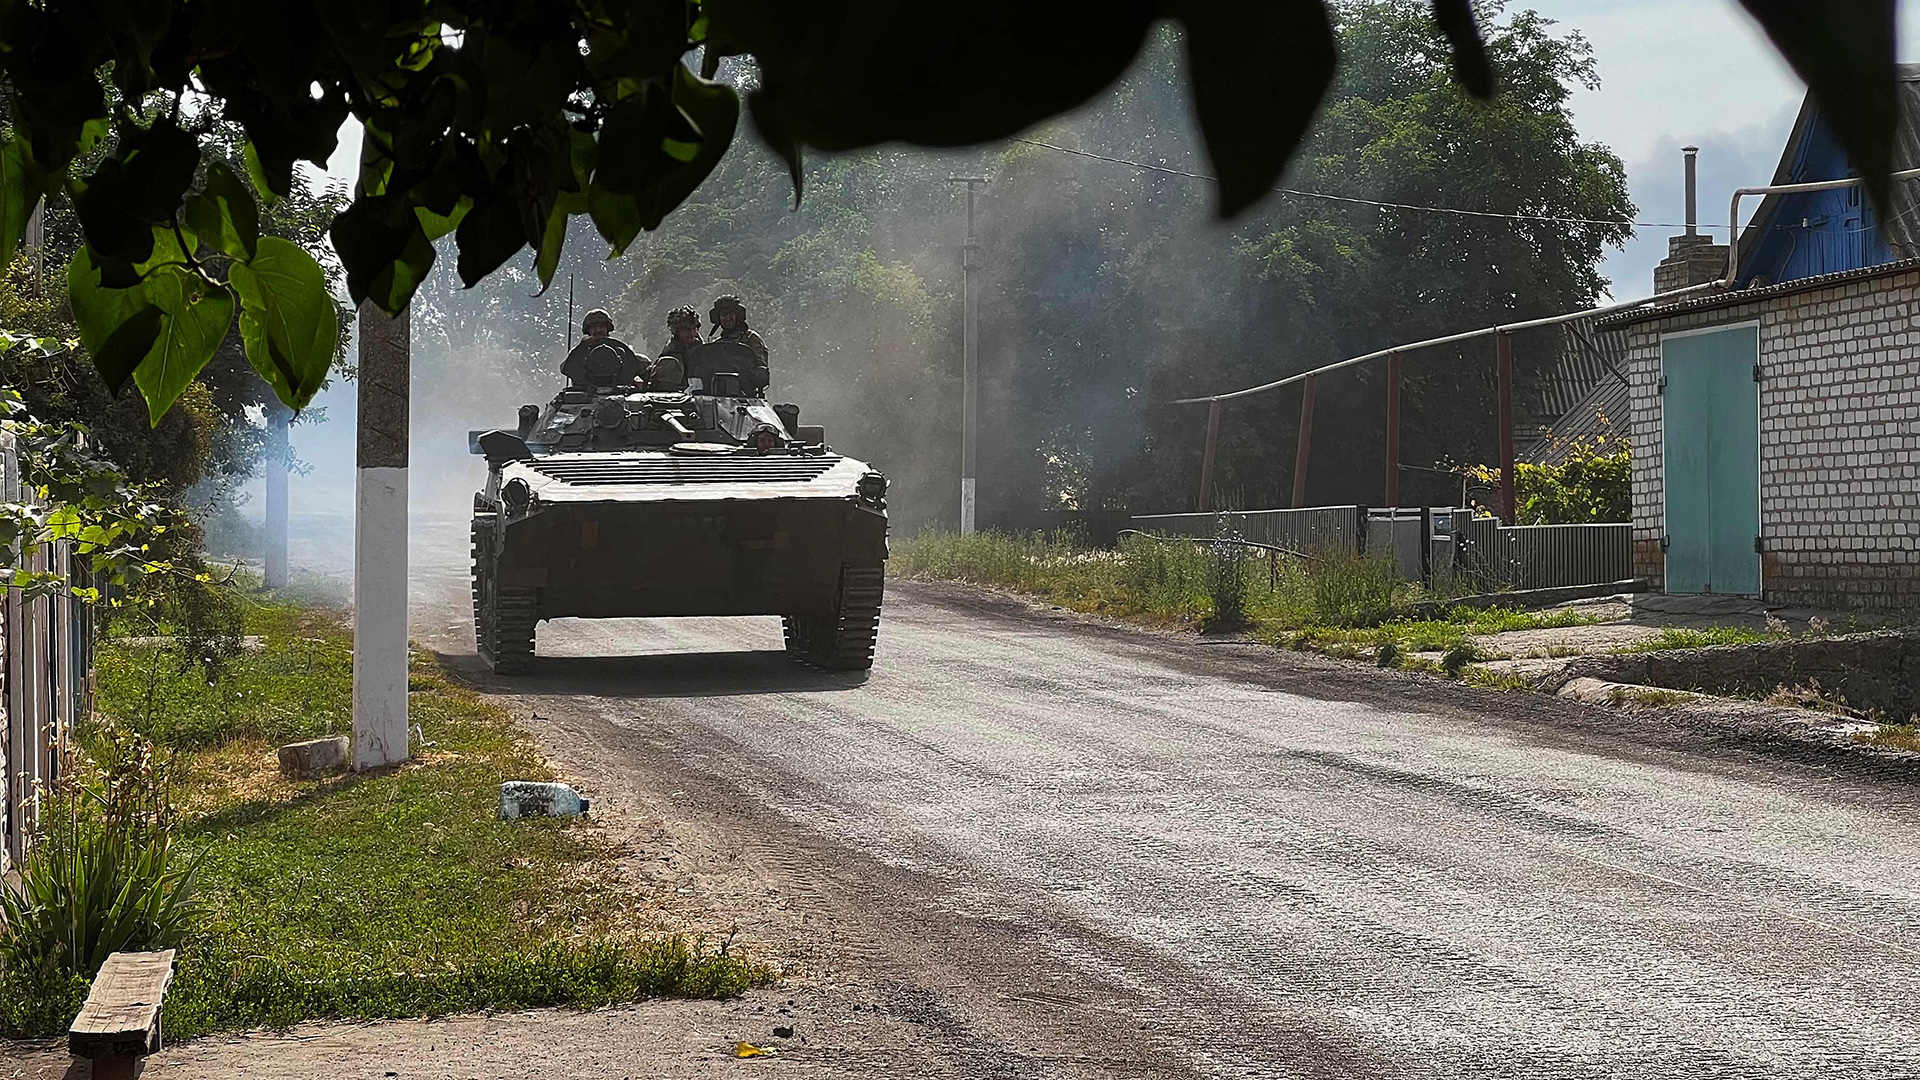 Ukrainische Soldaten fahren in einem gepanzerten Fahrzeug auf der Hauptstraße nach Lyssytschansk in der ostukrainischen Region Donbass. | AFP